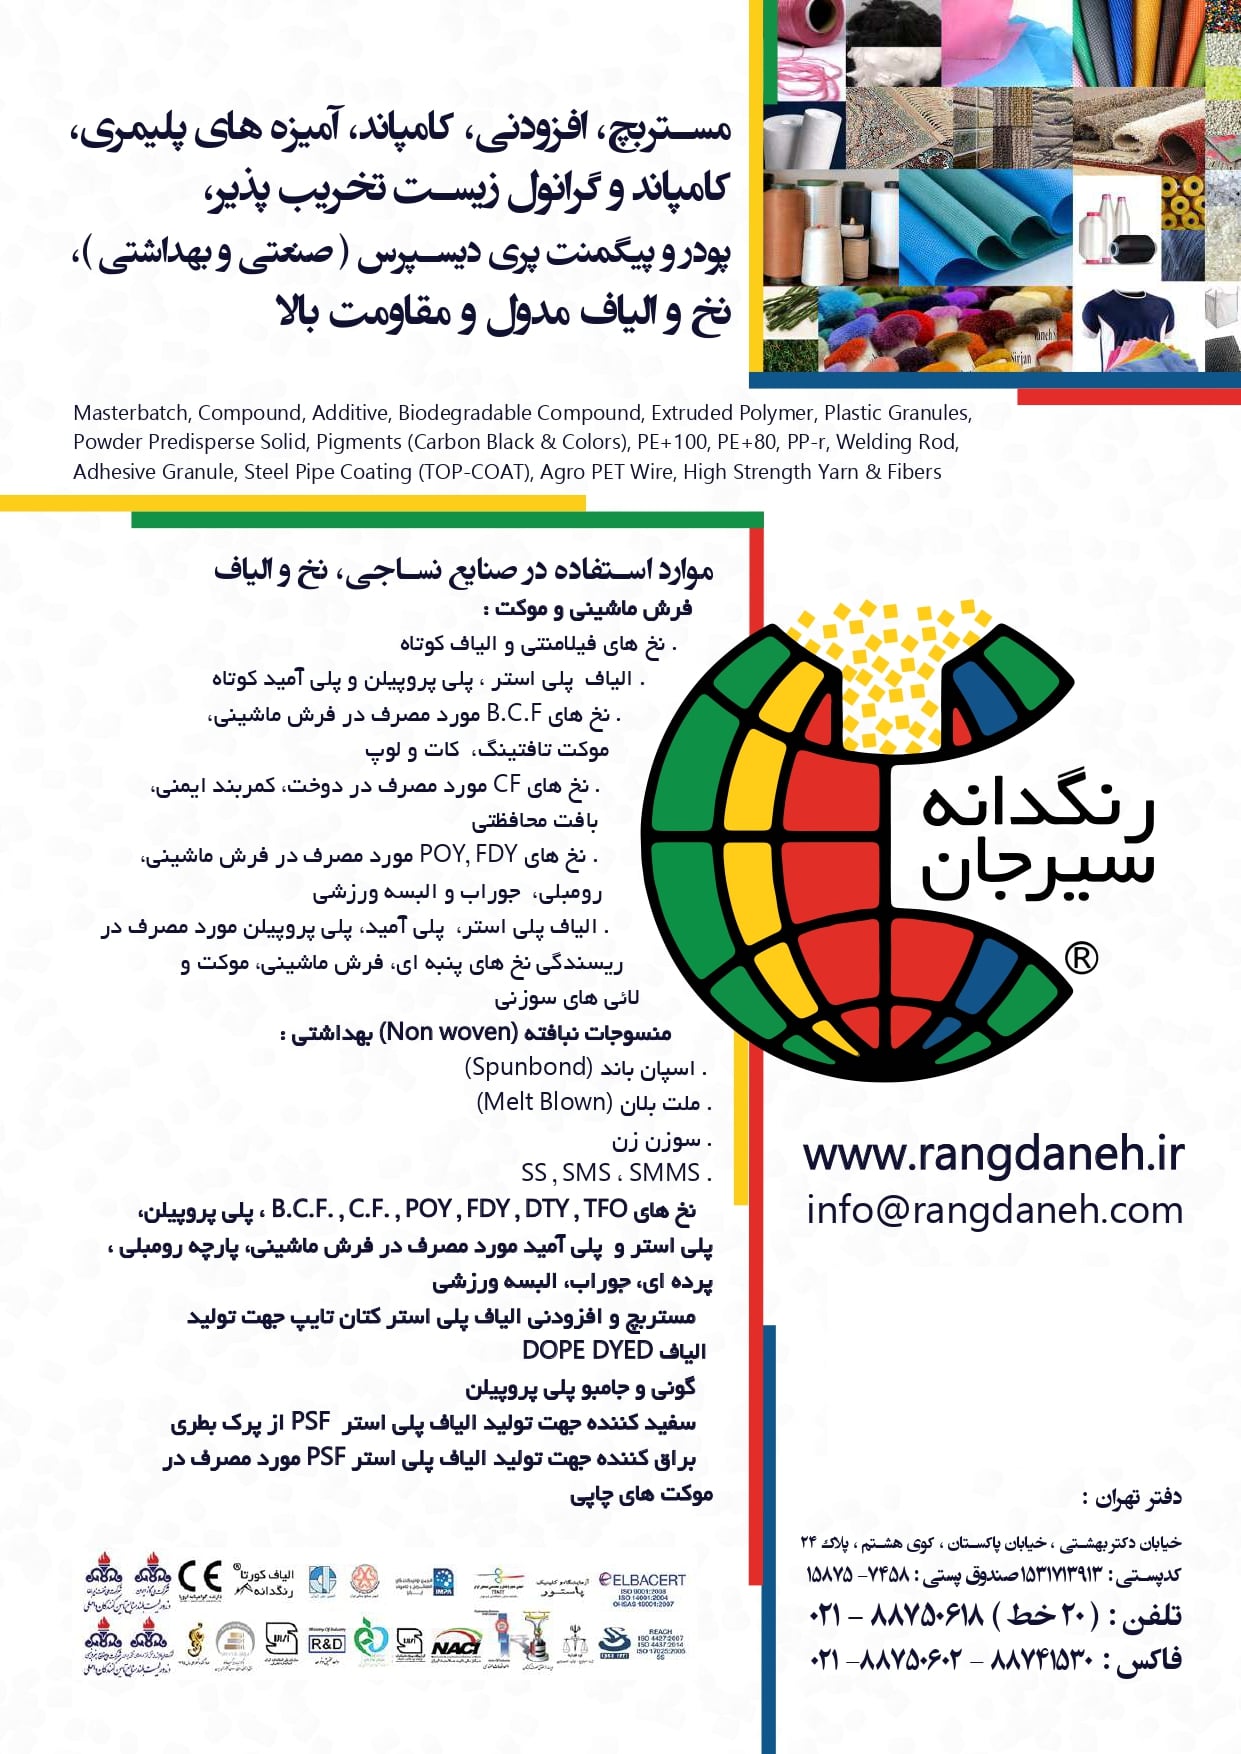 مجله نساجی کهن تیر ۱۴۰۱ آگهی شرکت رنگدانه سیرجان